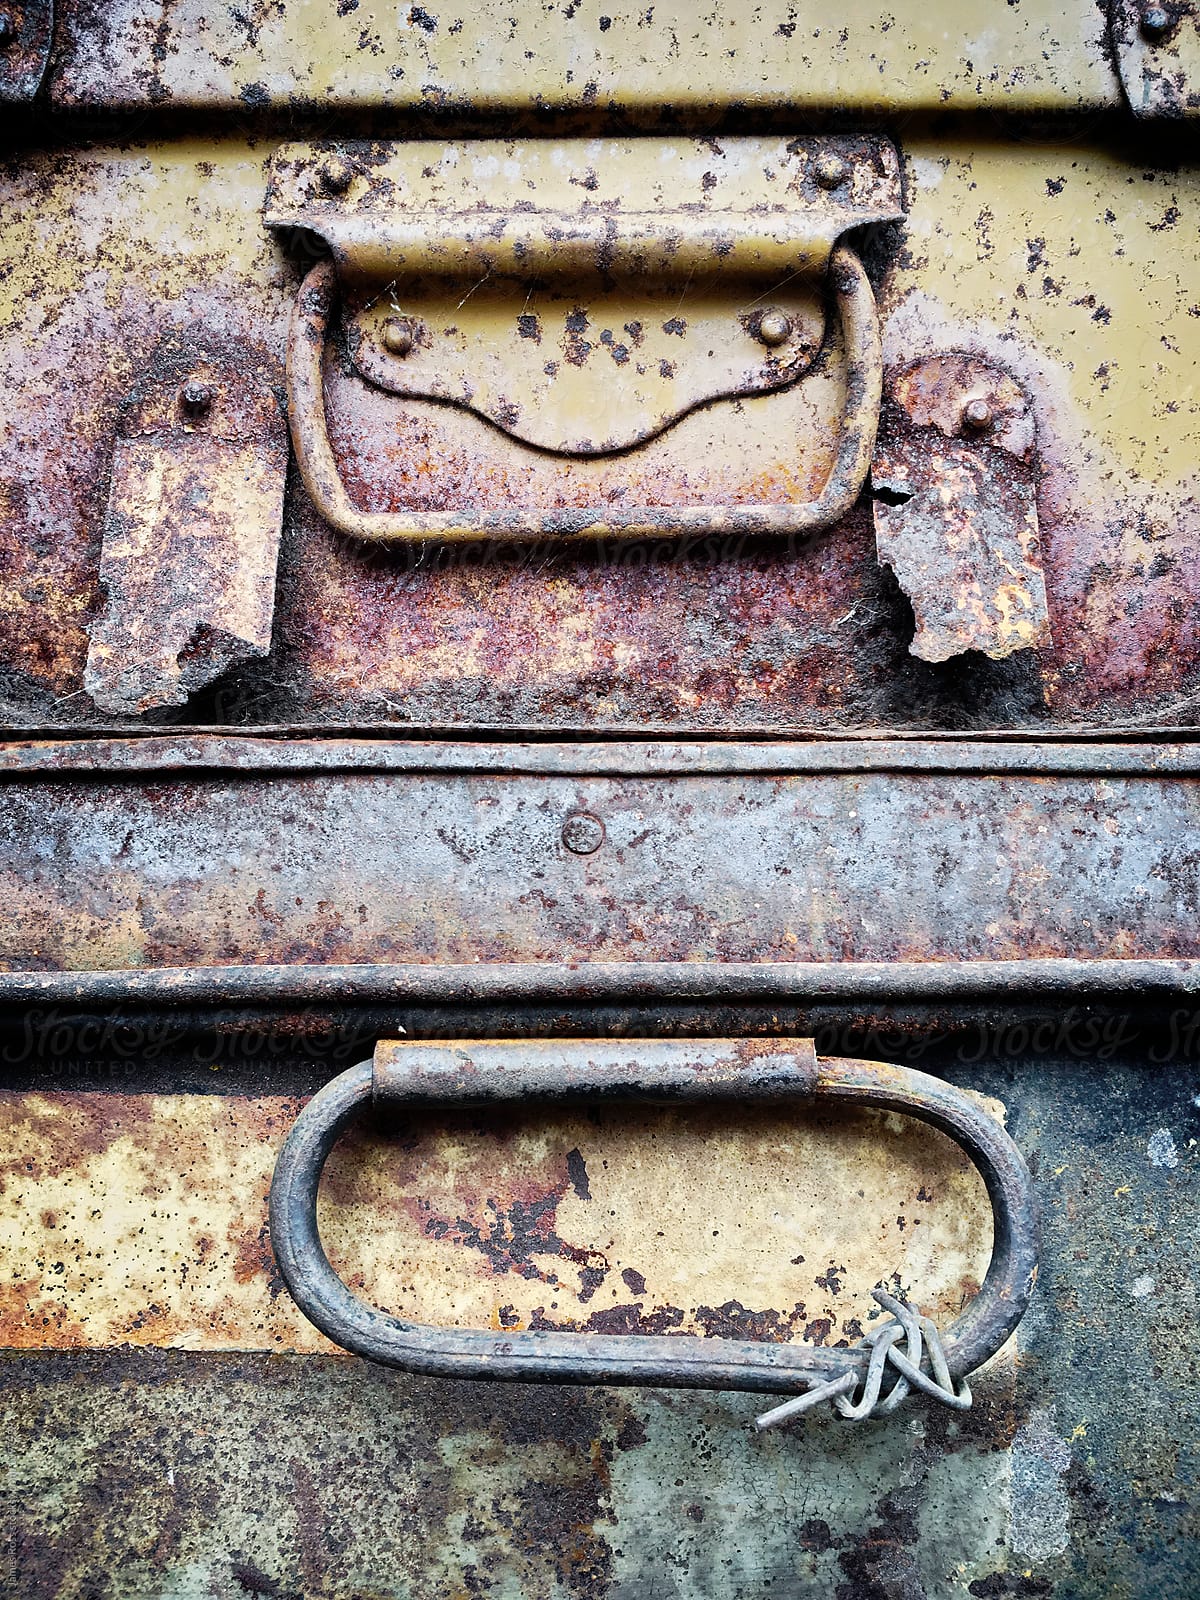 Rusty metal cases